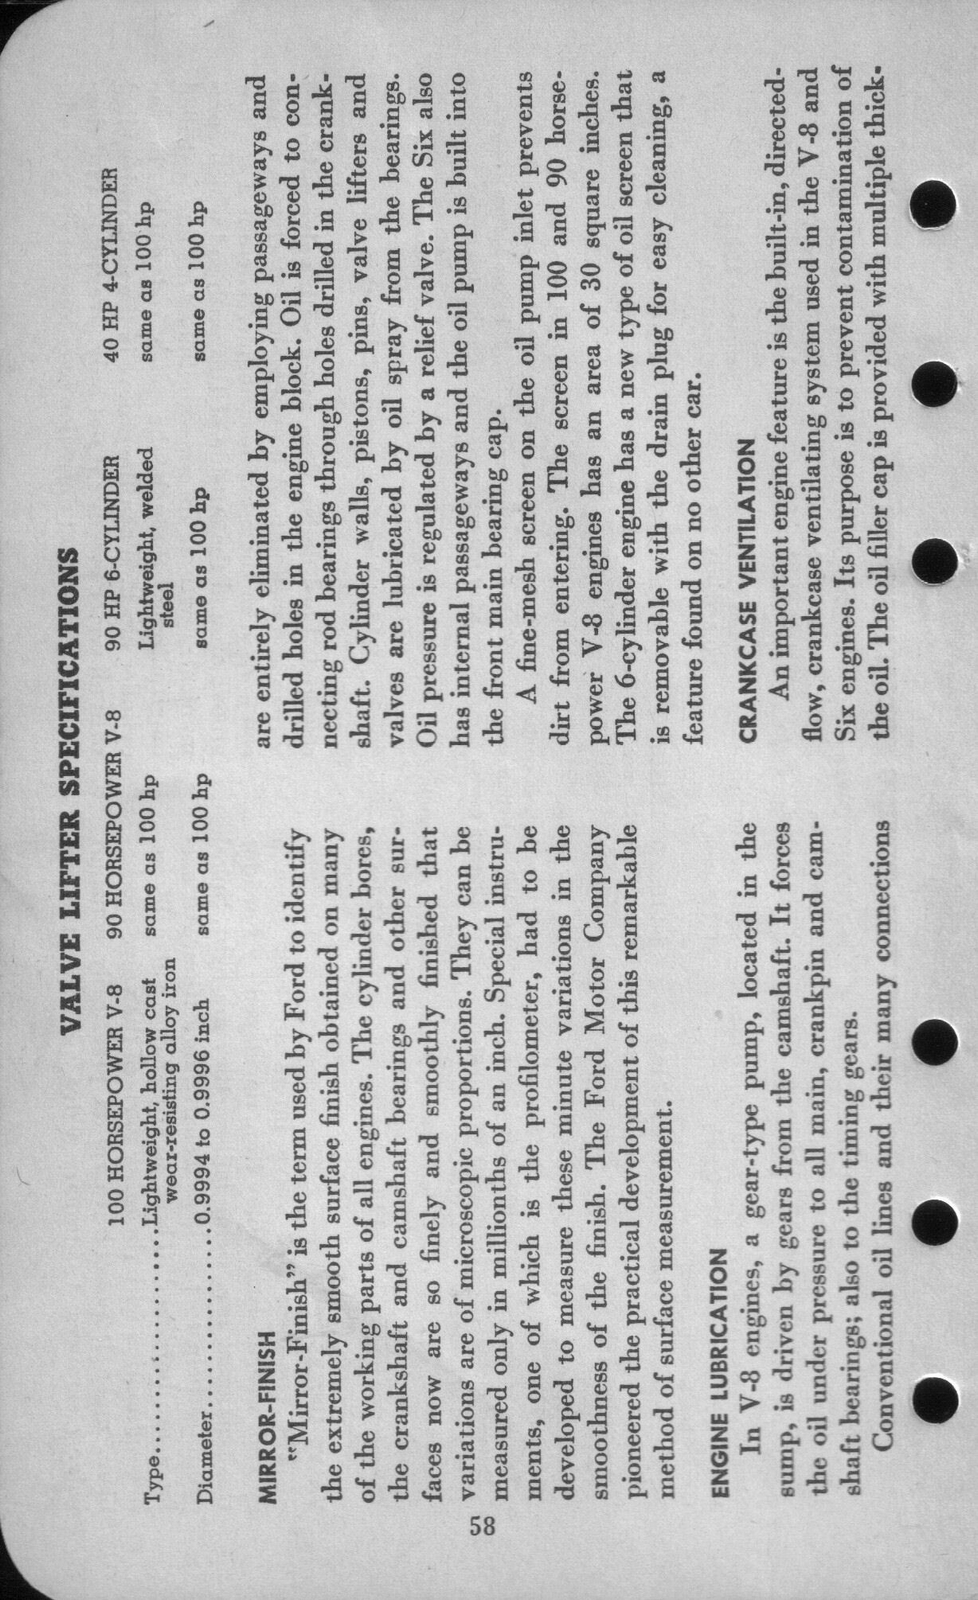 n_1942 Ford Salesmans Reference Manual-058.jpg